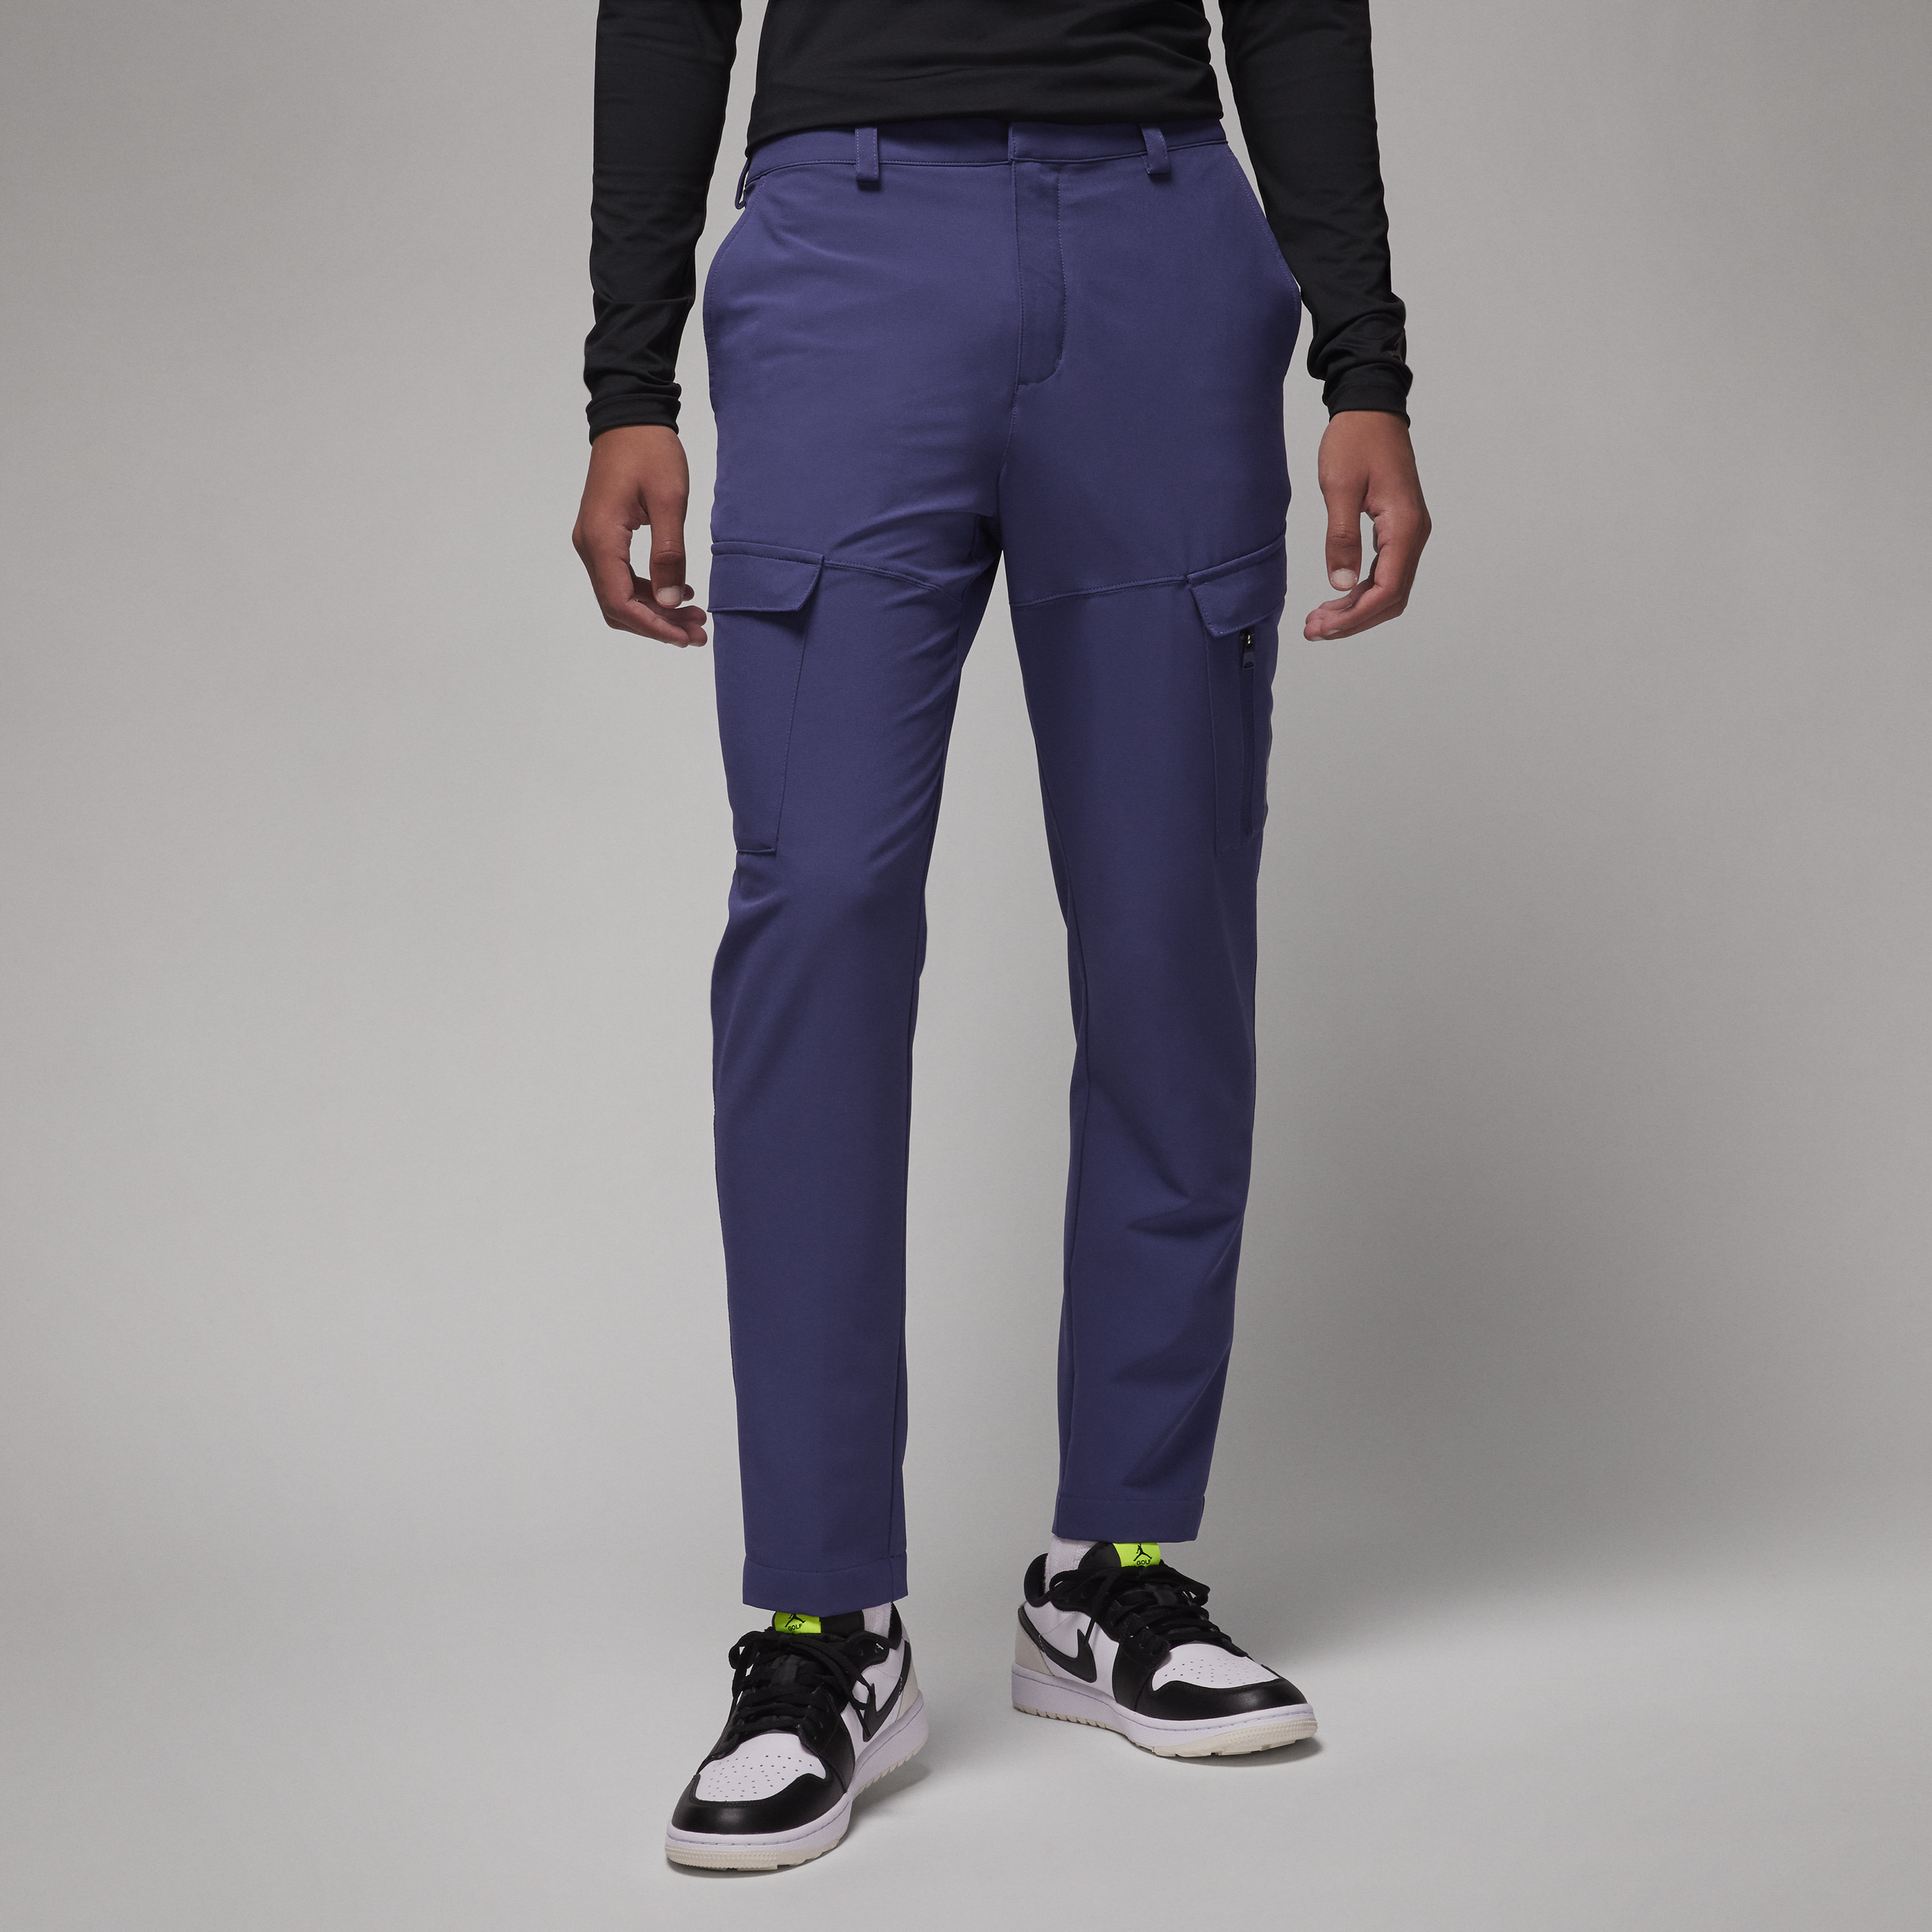 Nike Pantaloni Jordan Golf – Uomo - Viola